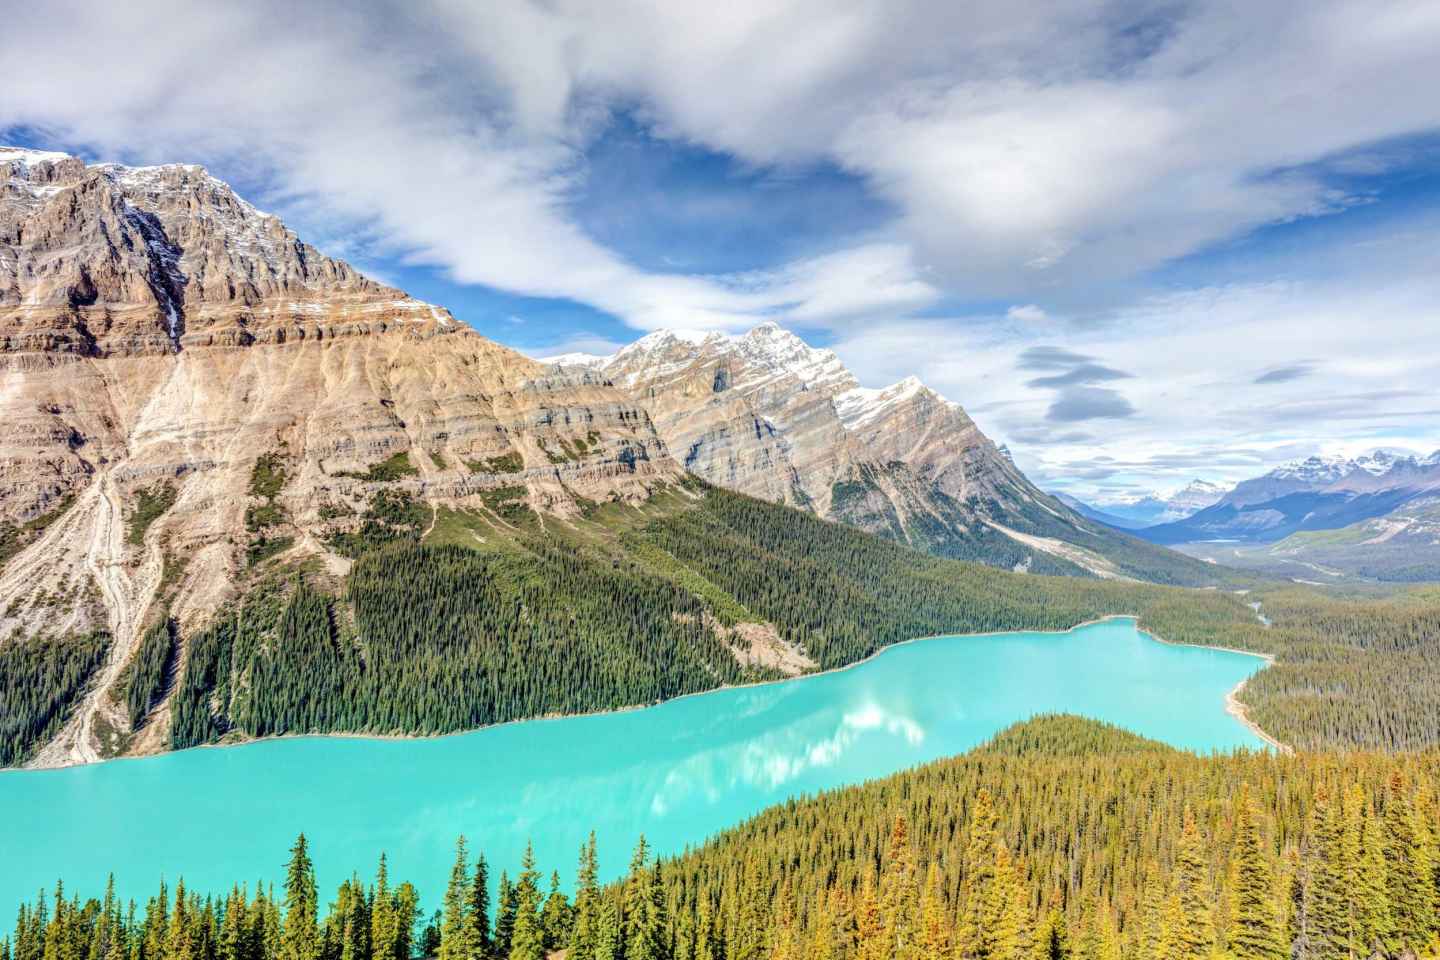 Top 10 UNESCO Sites In Canada